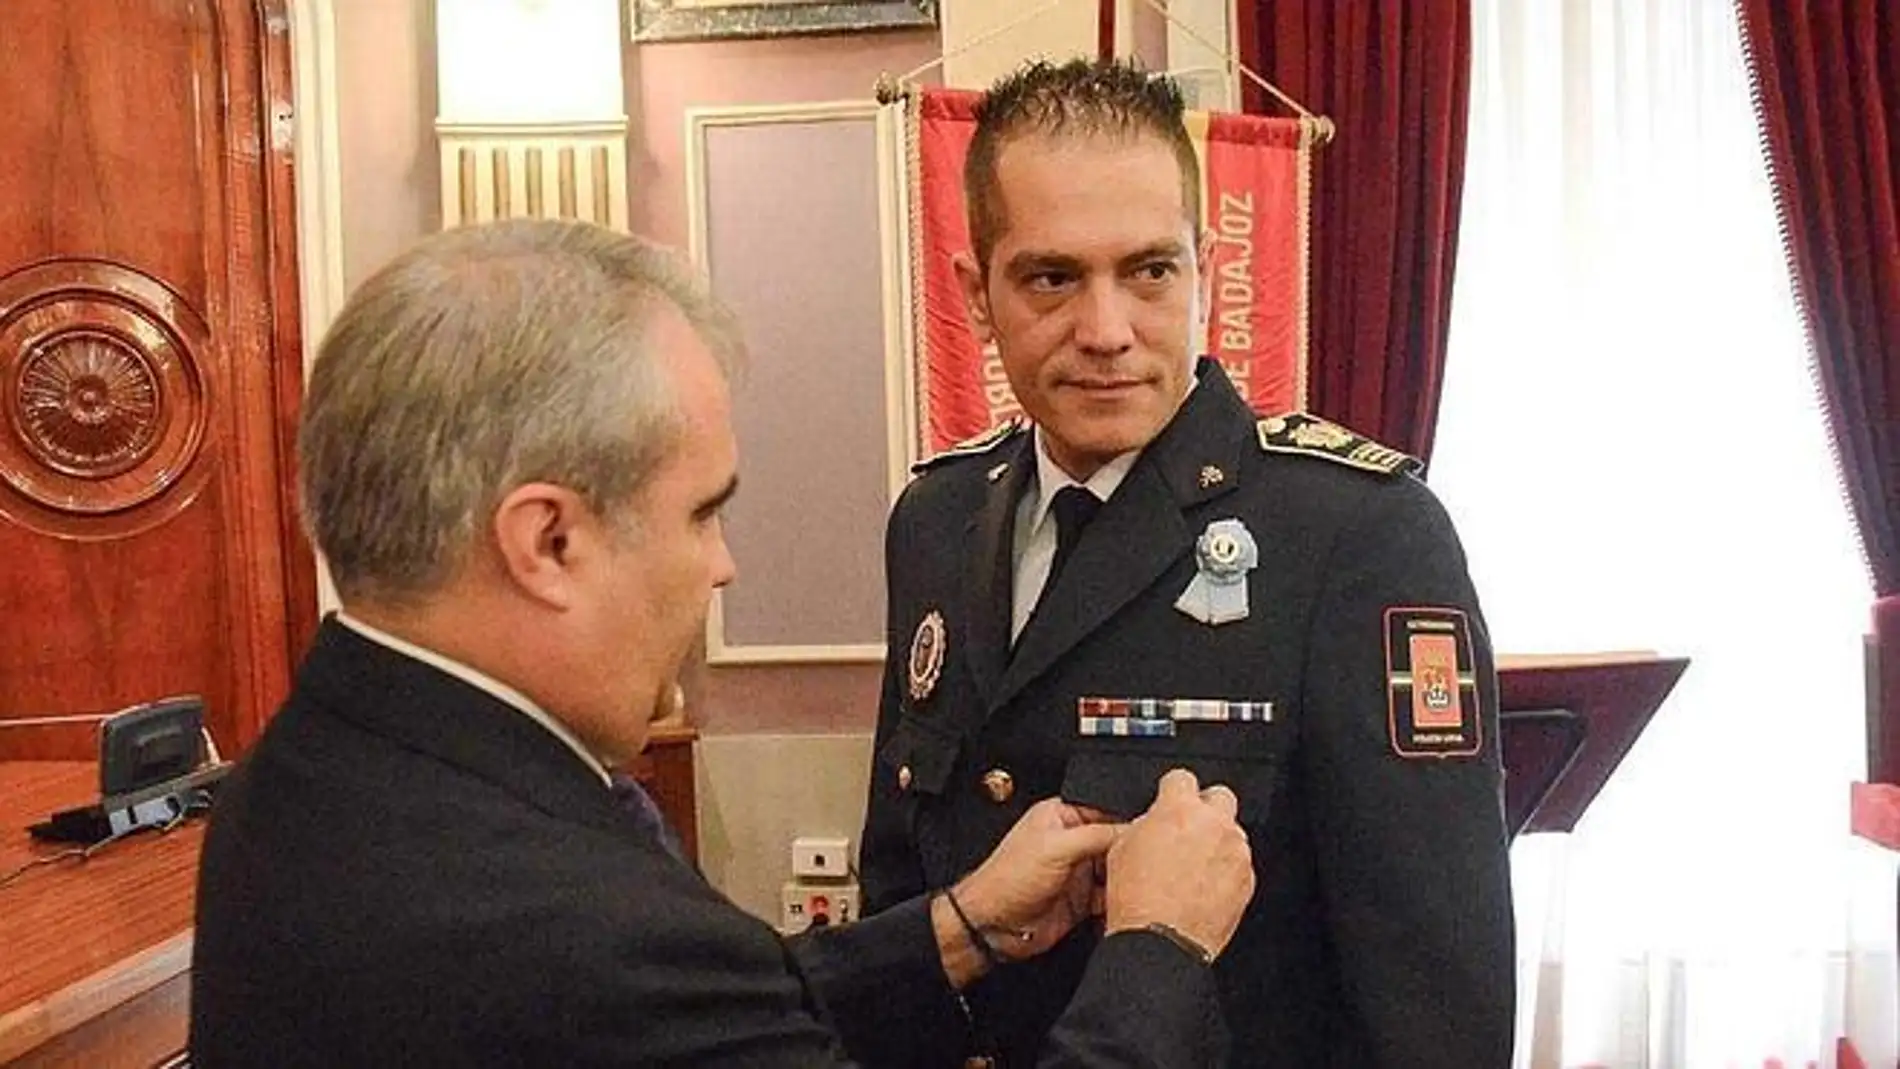 El superintendente de la Policía Local de Badajoz, Rubén Muñoz, ha solicitado por escrito a personal la subida de su salario en 7.721 euros anuales